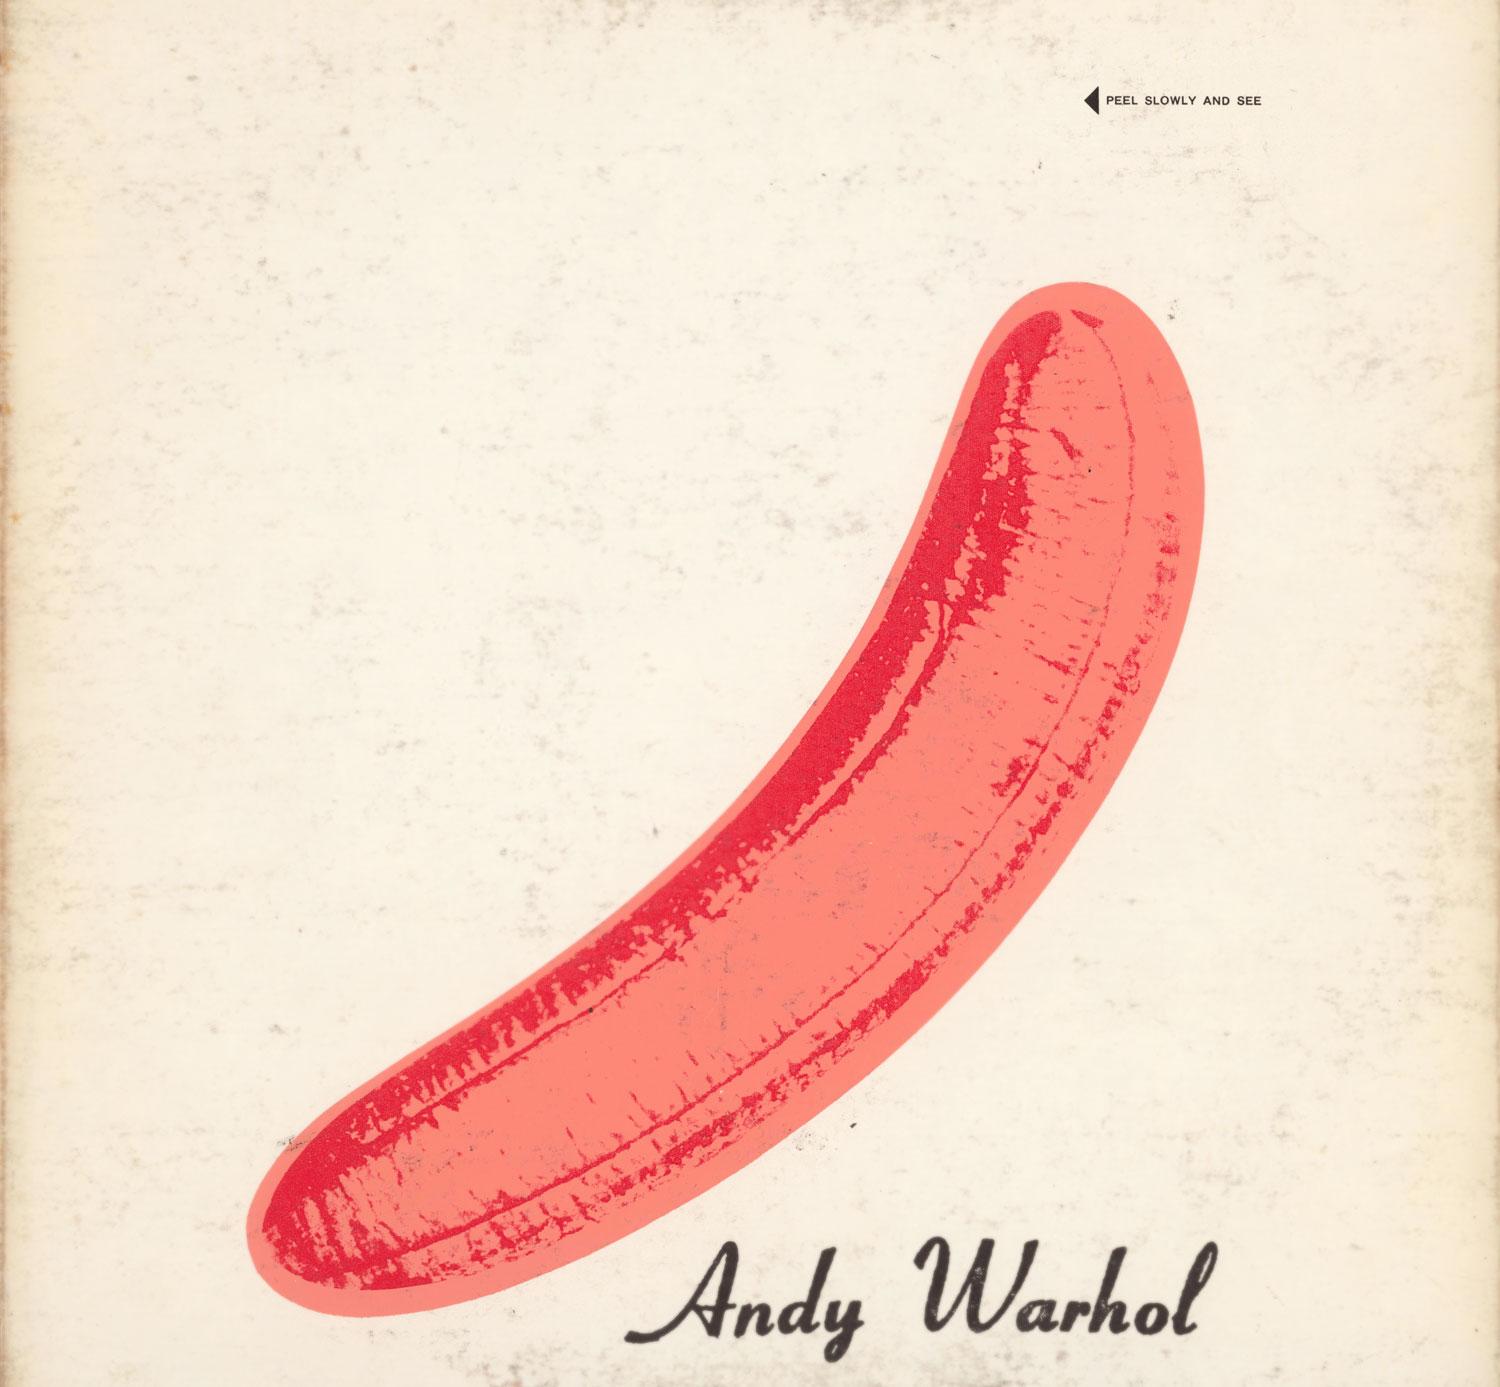 Le Velvet Underground et Nico
"The Velvet Underground & Nico Produced By Andy Warhol", 1967
Pressage du début de l'année 1967 sur la côte Est
Couverture LP uniquement
Couverture dessinée par Andy Warhol

Andy Warhol Banana Cover Art 1967 :
The